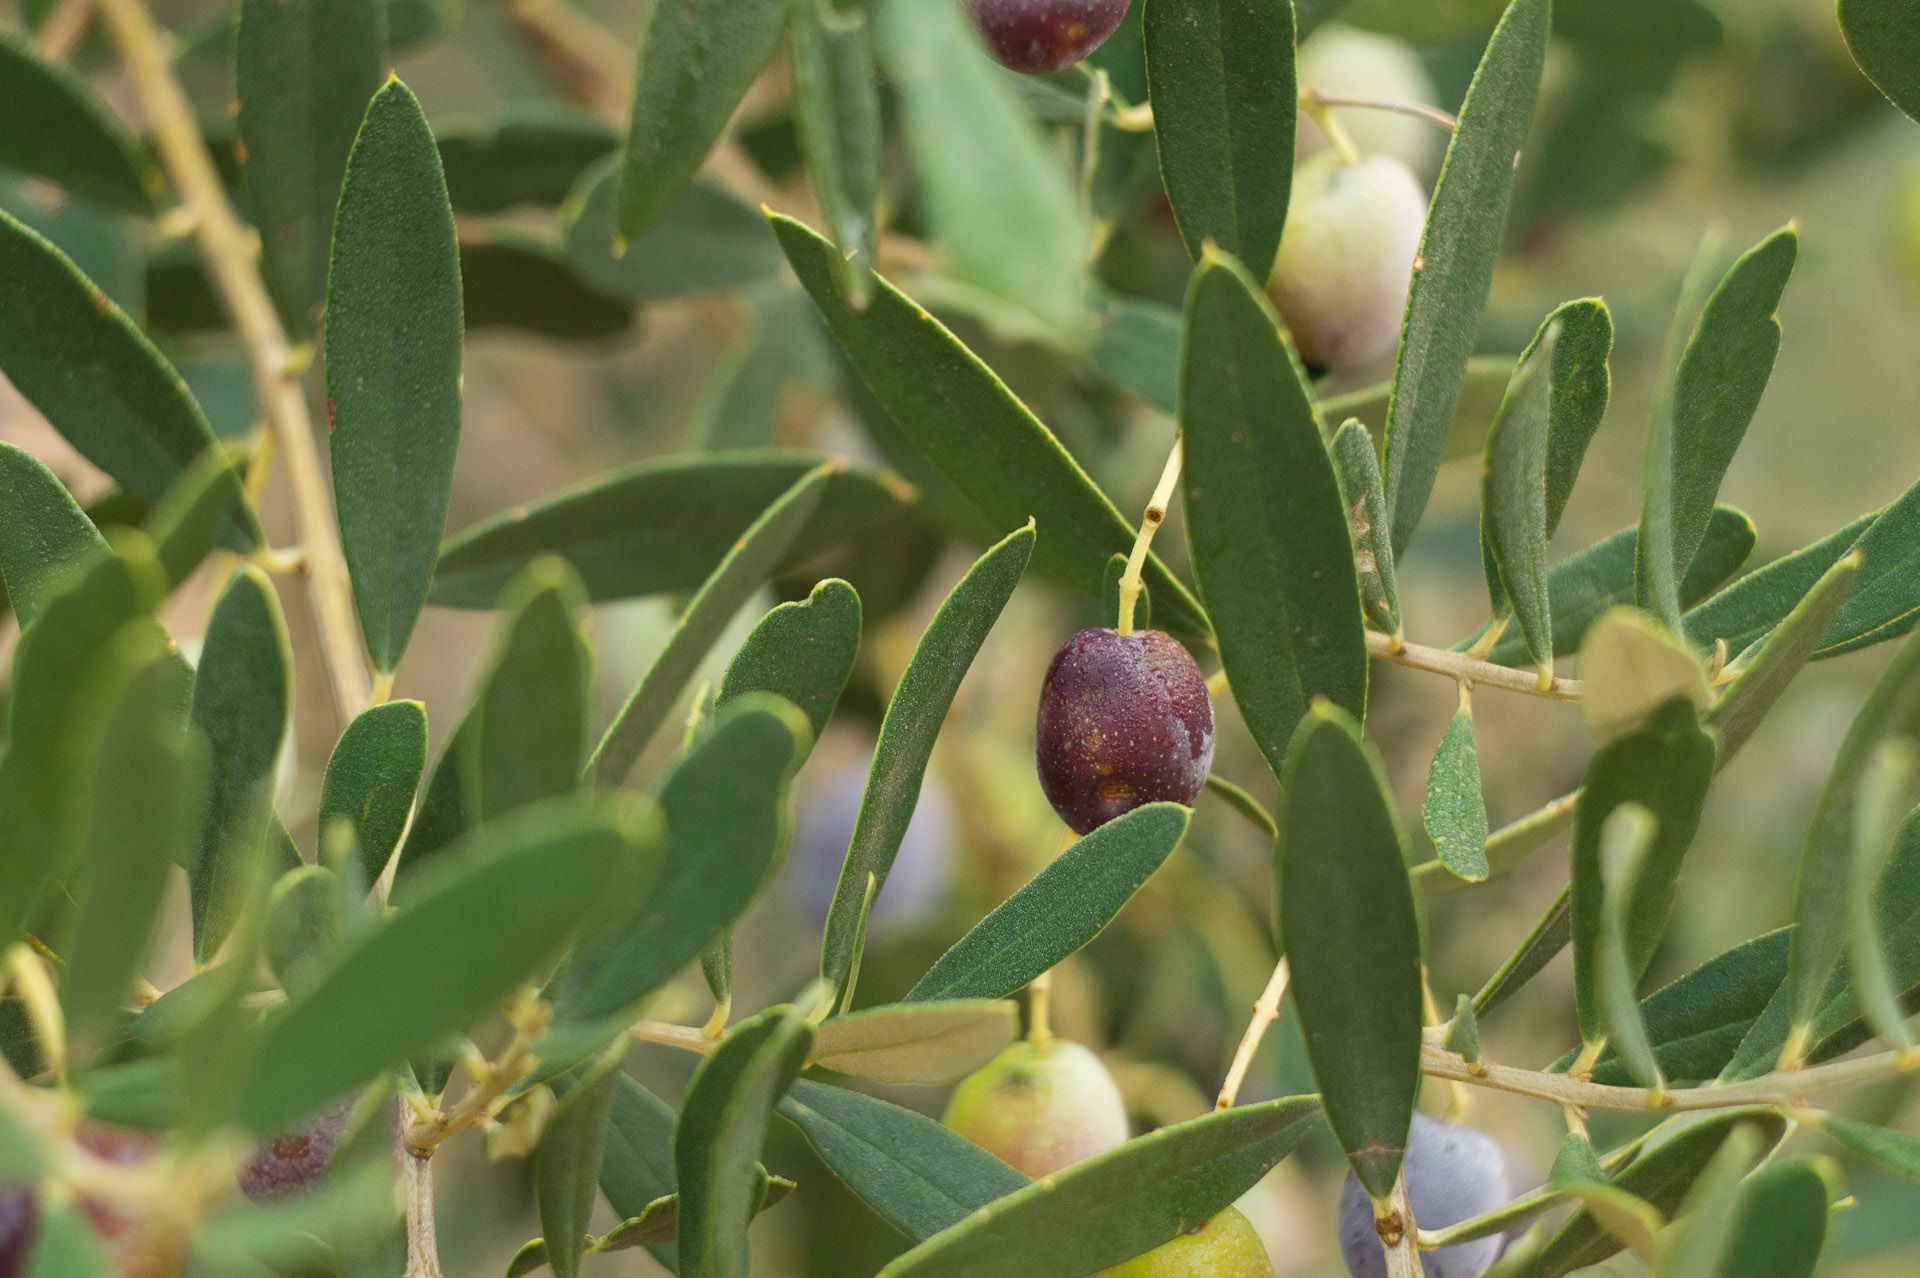 Taller de recollida i conserva d’olives